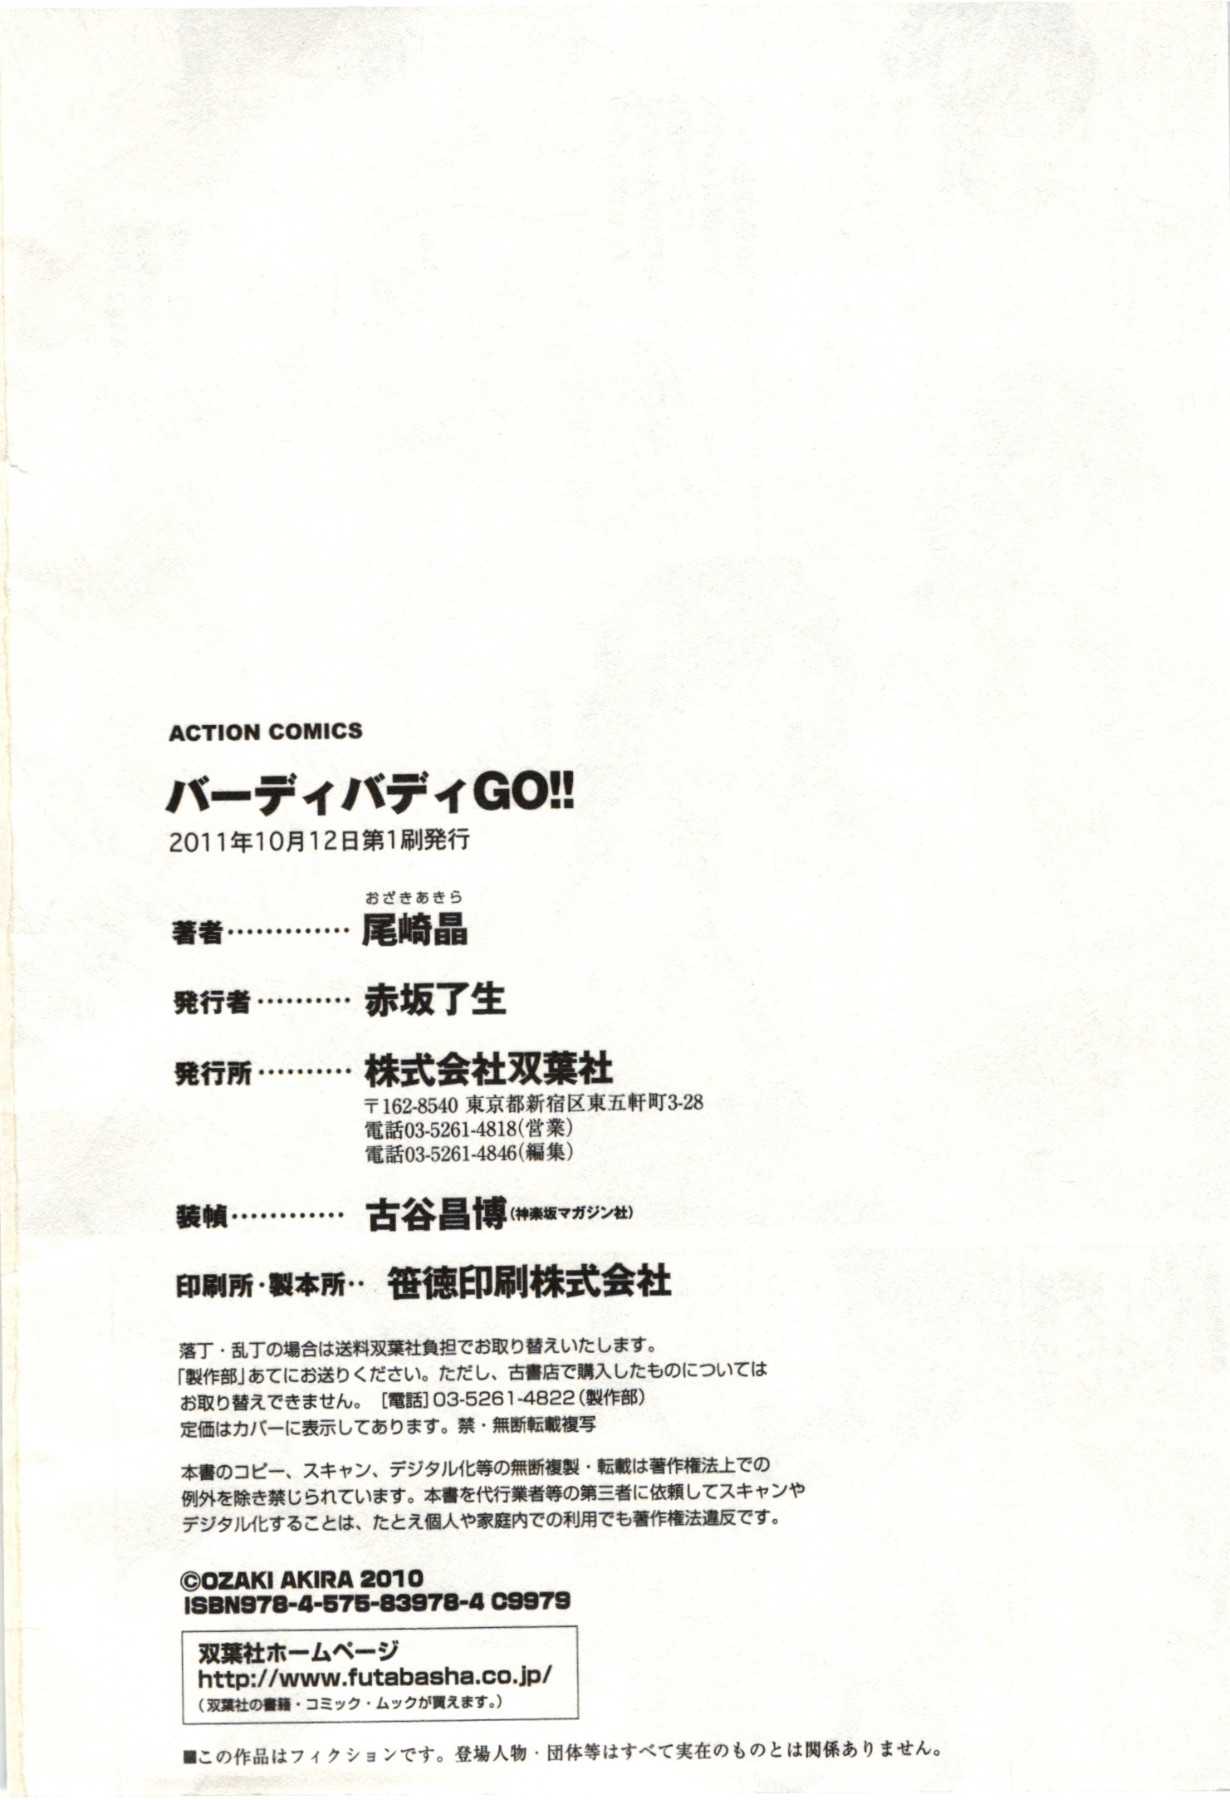 [Ozaki Akira] Birdy Body Go!! [尾崎晶] バーディバディGO!! [2011-10-12]